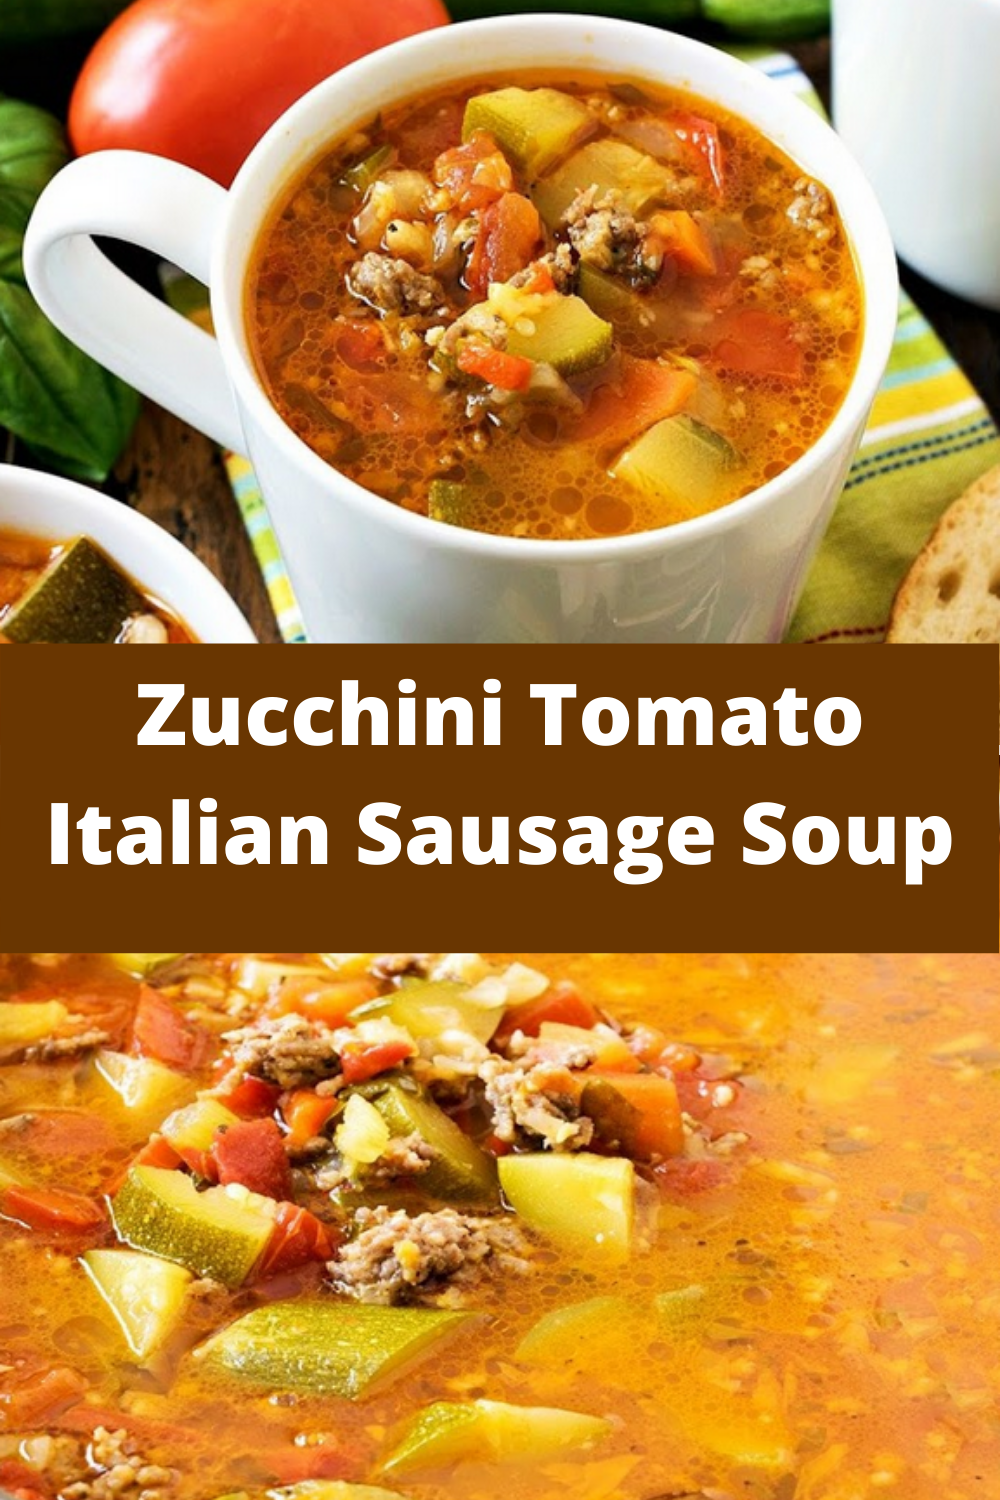 Zucchini Tomato Italian Sausage Soup